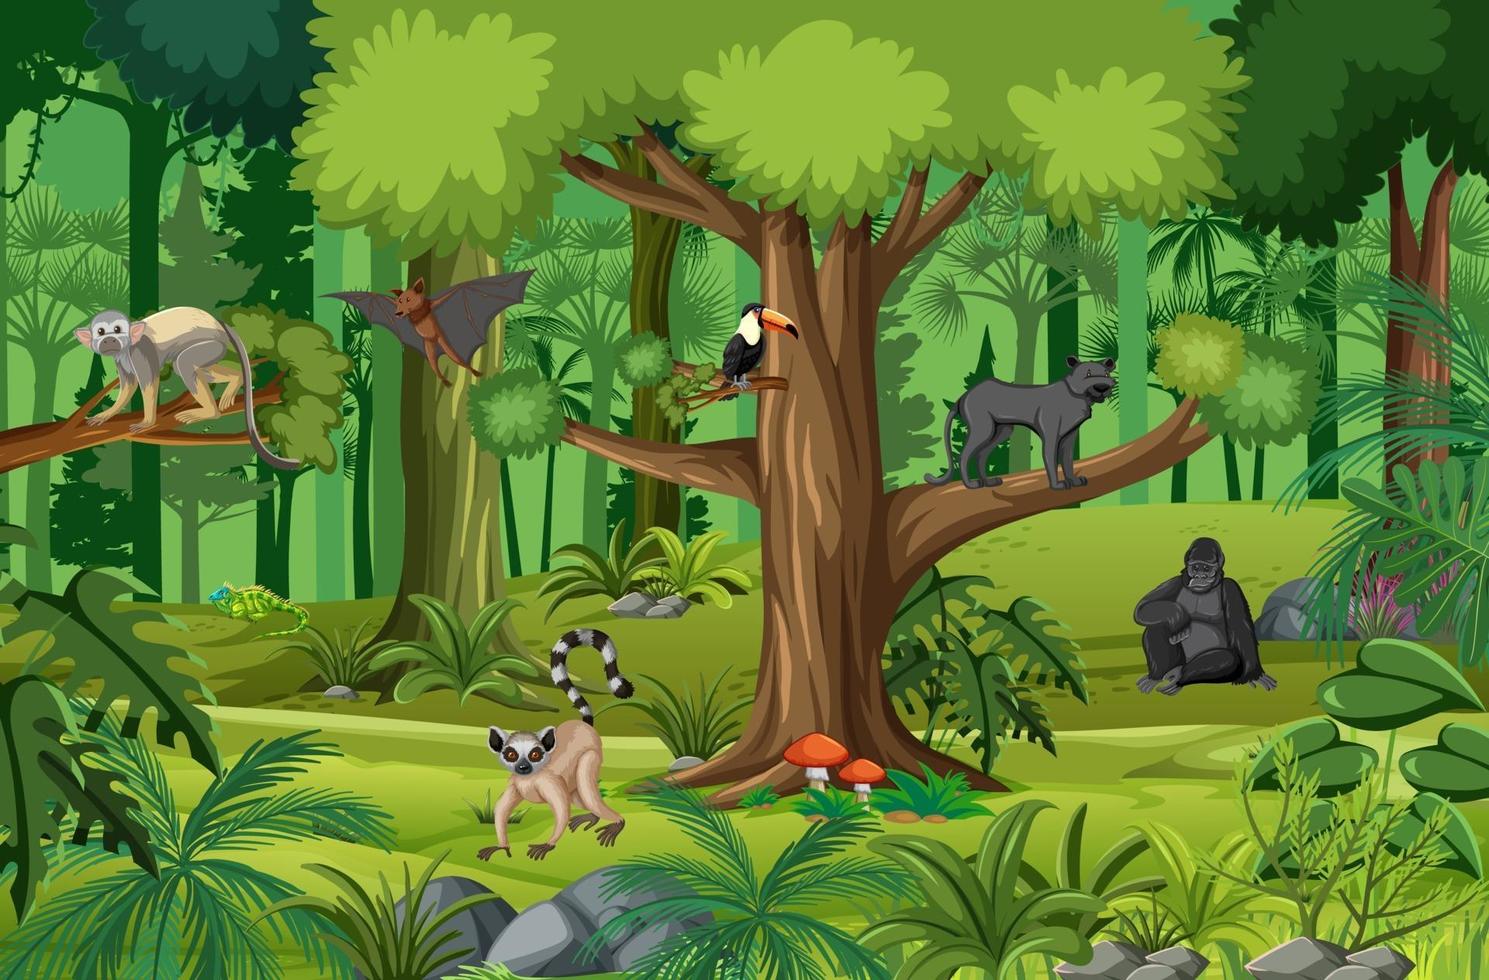 scène de forêt tropicale humide avec divers animaux sauvages 2764464 -  Telecharger Vectoriel Gratuit, Clipart Graphique, Vecteur Dessins et  Pictogramme Gratuit